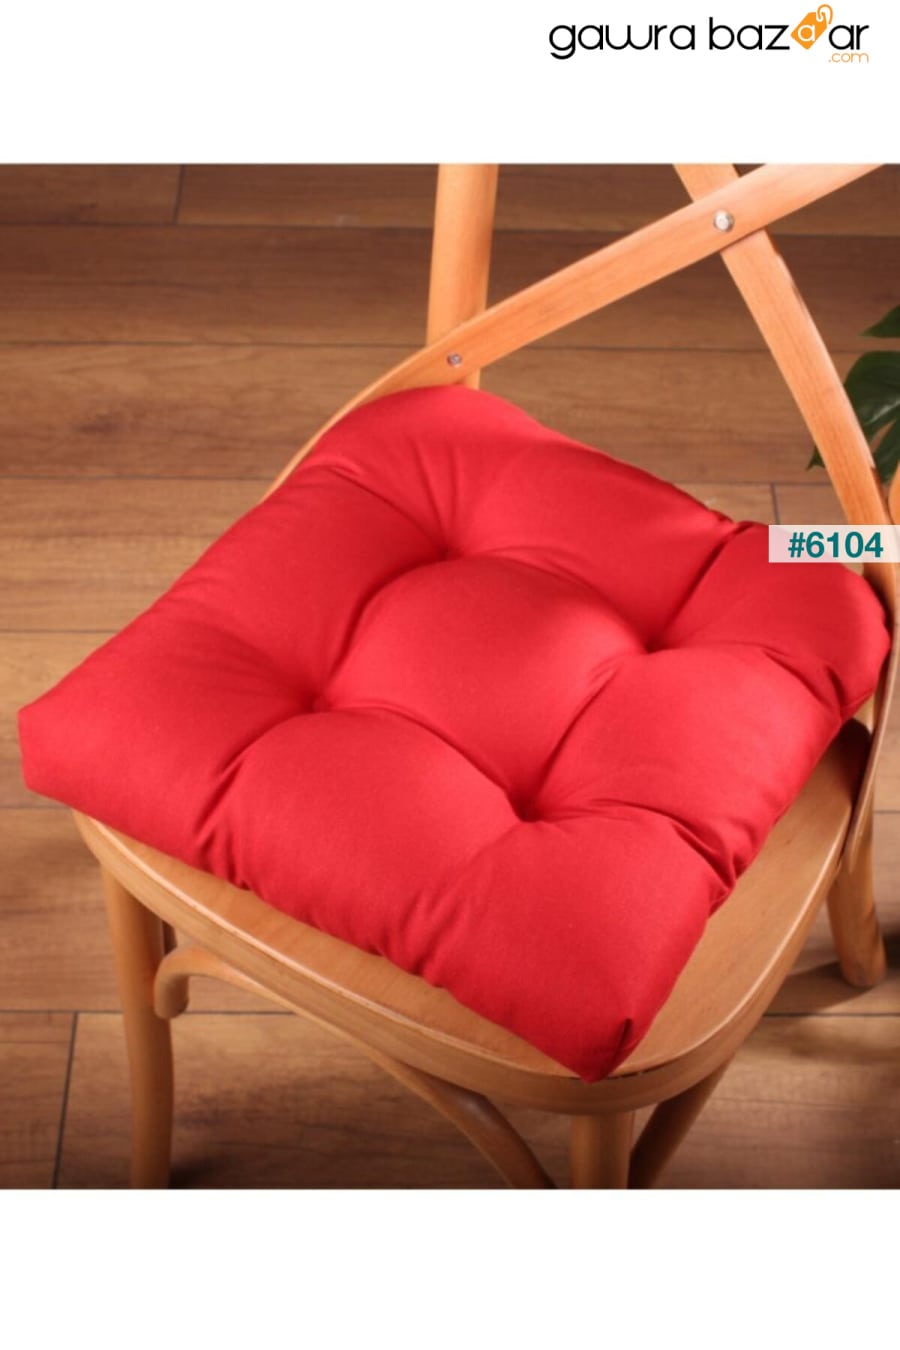 وسادة كرسي لوكس Pofidik باللون الأحمر الكلاريت بغرز خاصة 40x40 سم ALTINPAMUK 0